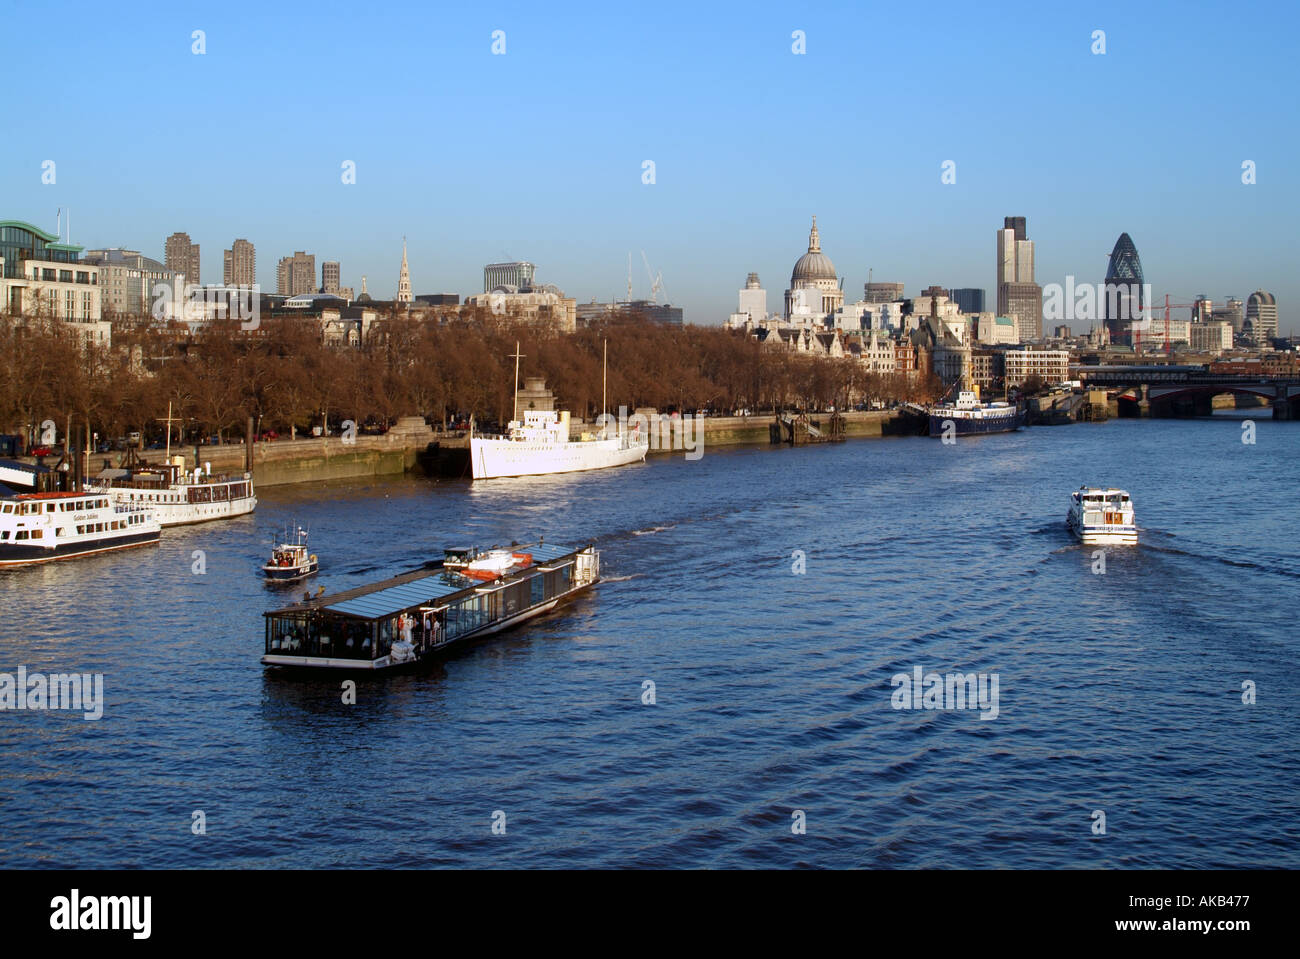 Ville de ville de Londres au-delà de l'Embankment Tamise vus de Waterloo Bridge, avec des bateaux d'excursion Banque D'Images